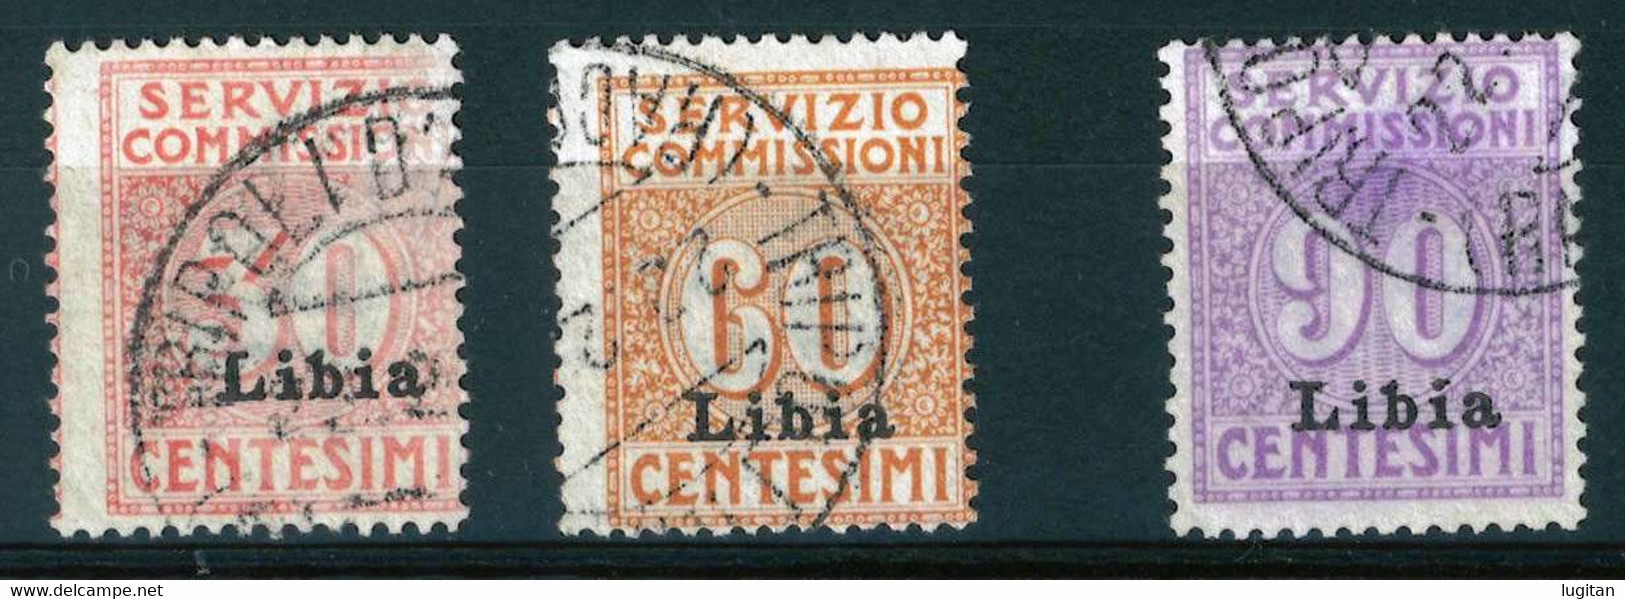 LIBIA - COLONIE ITALIANE - ANNO 1915 - SERVIZIO COMMISSIONI SASS. 1/3 - RARA - USATA - Libië